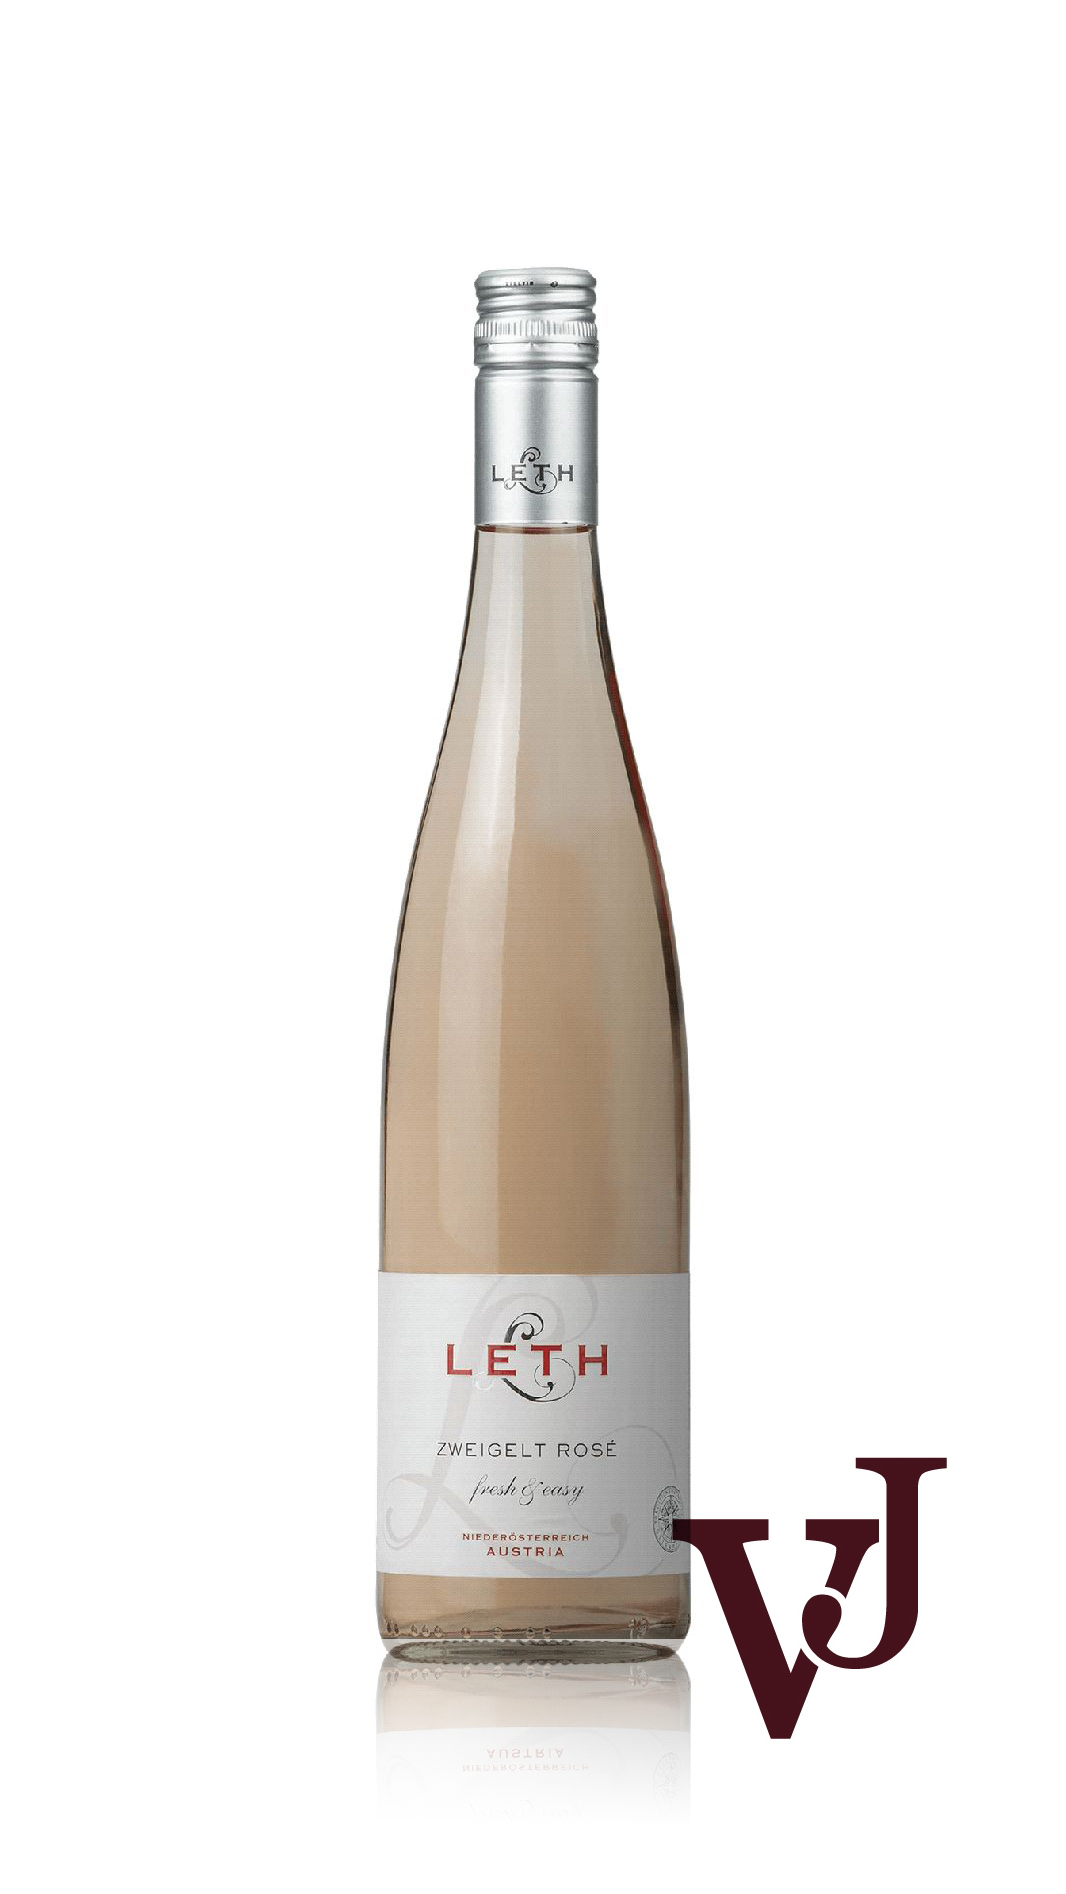 Rosé Vin - Leth artikel nummer 5602401 från producenten Weingut Leth från området Österrike